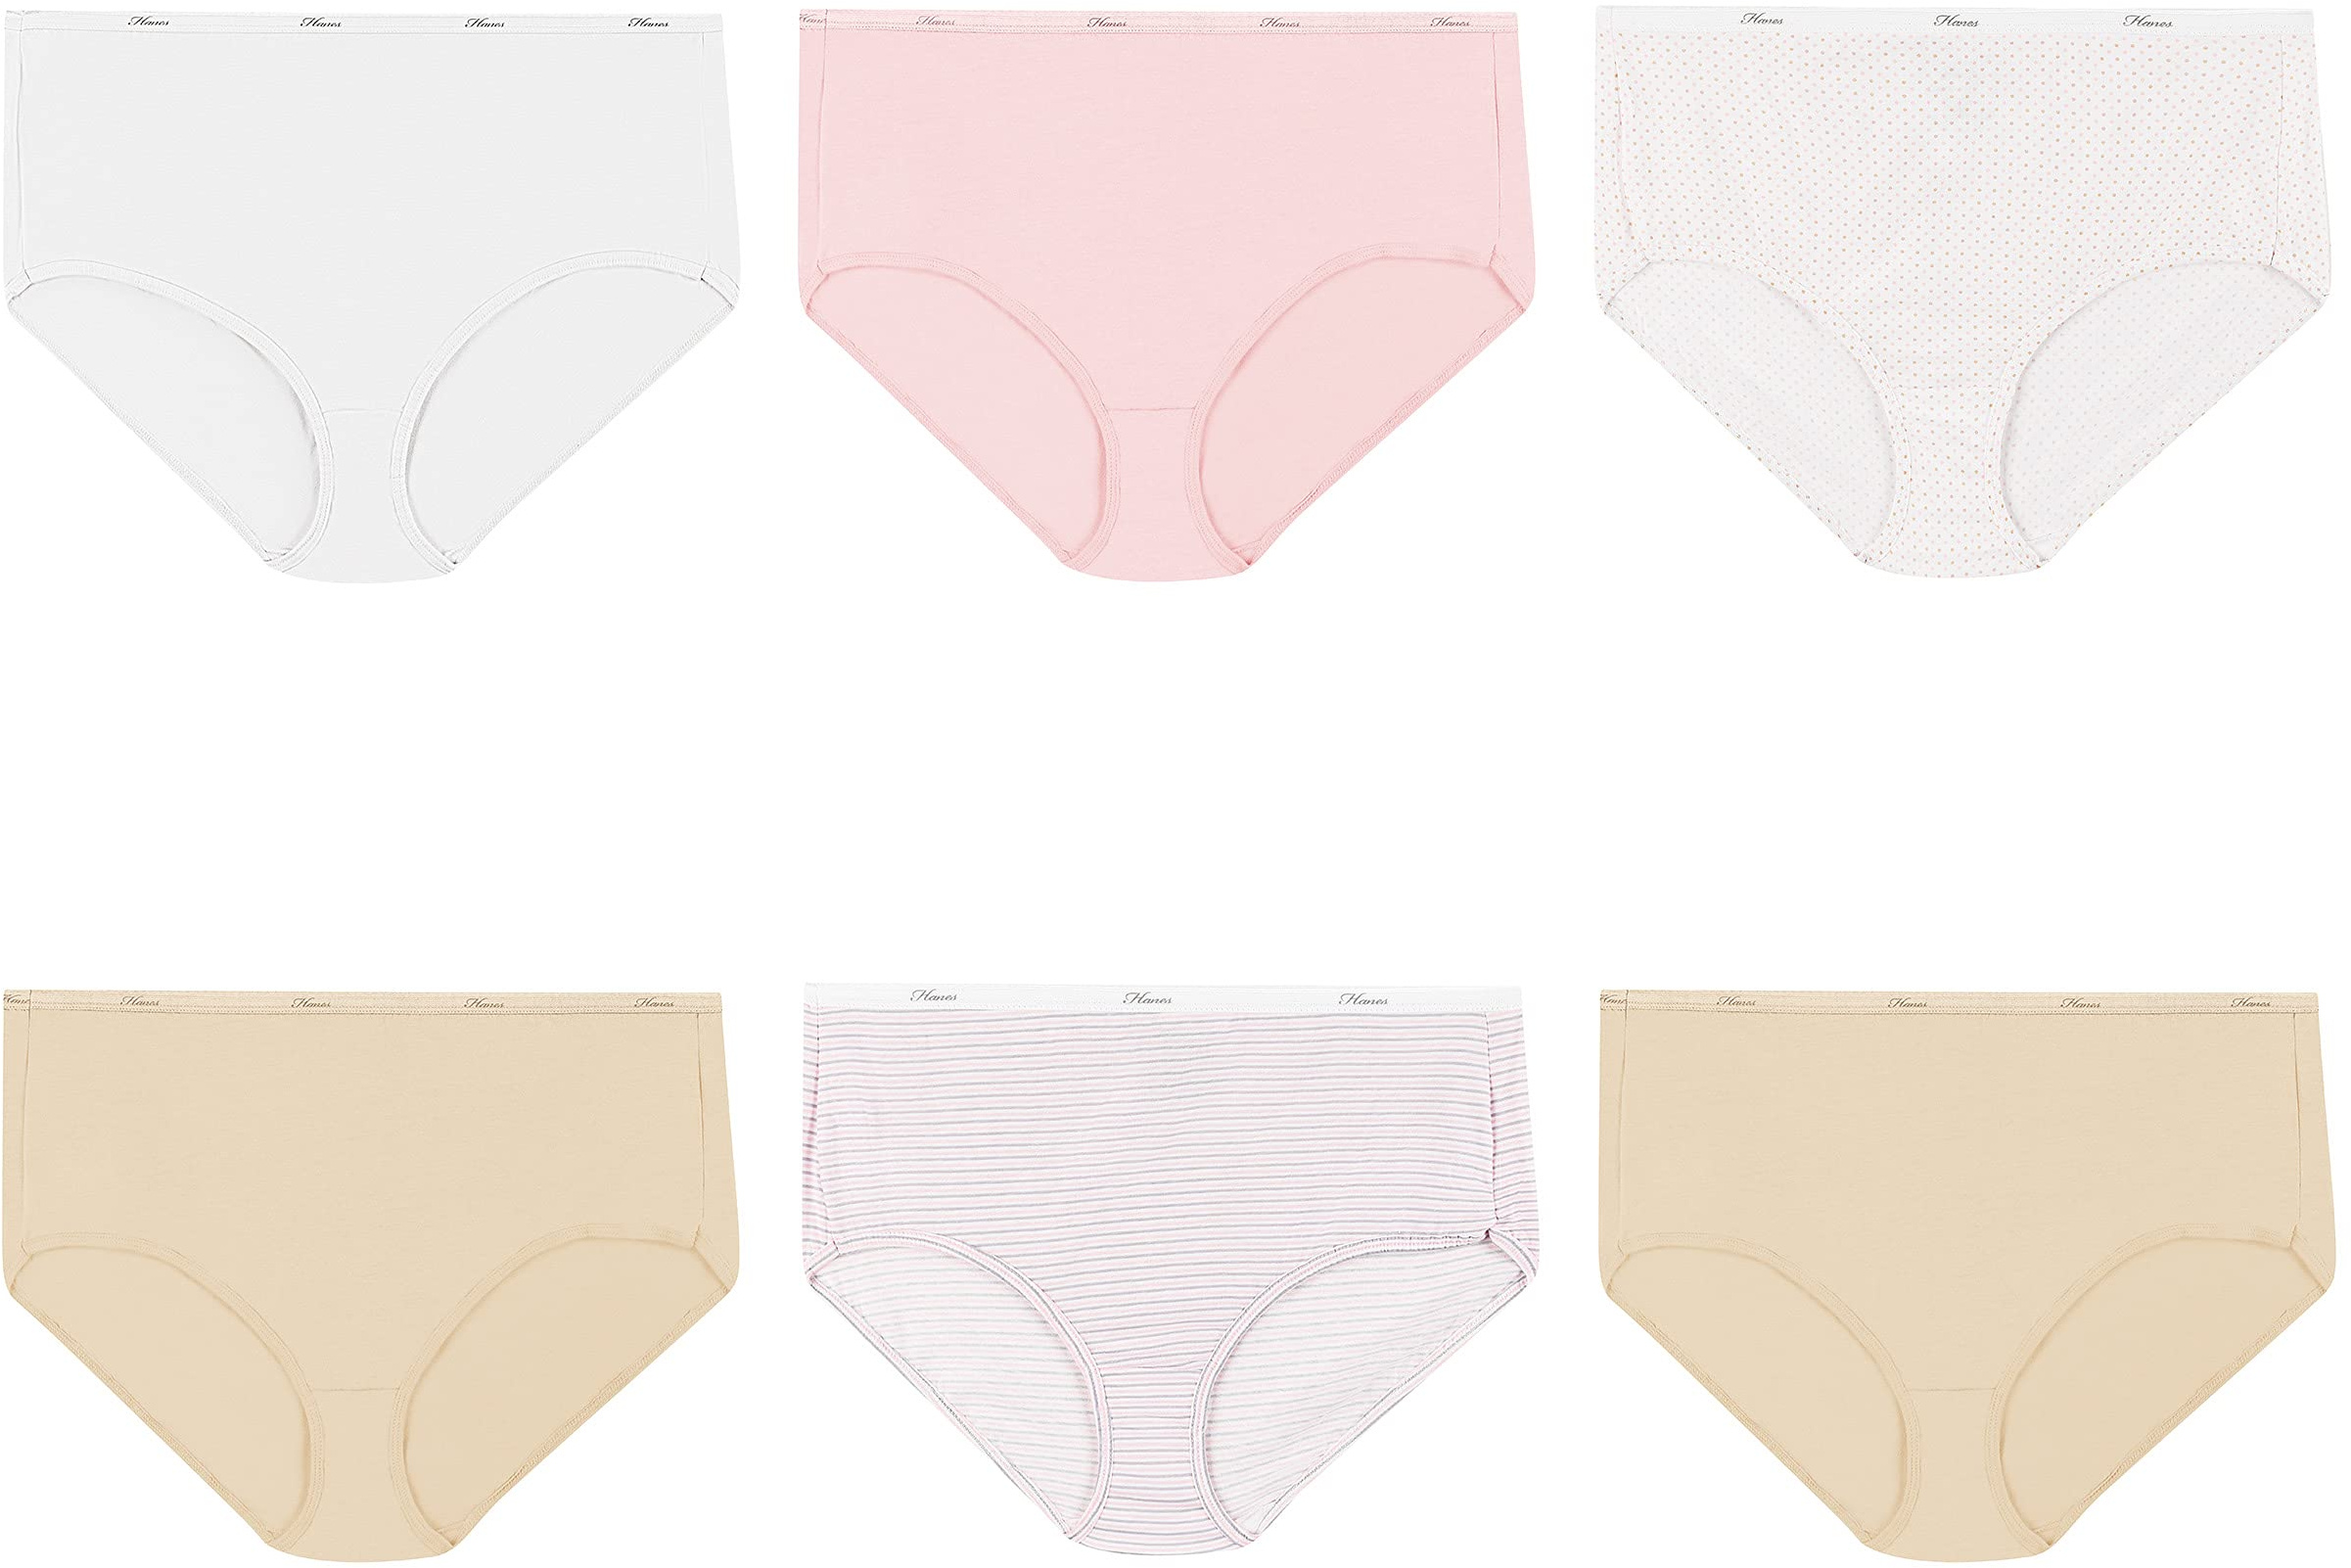 Hanes Women's Cotton Brief Underwear (Regular & Plus Sizes) Reviews